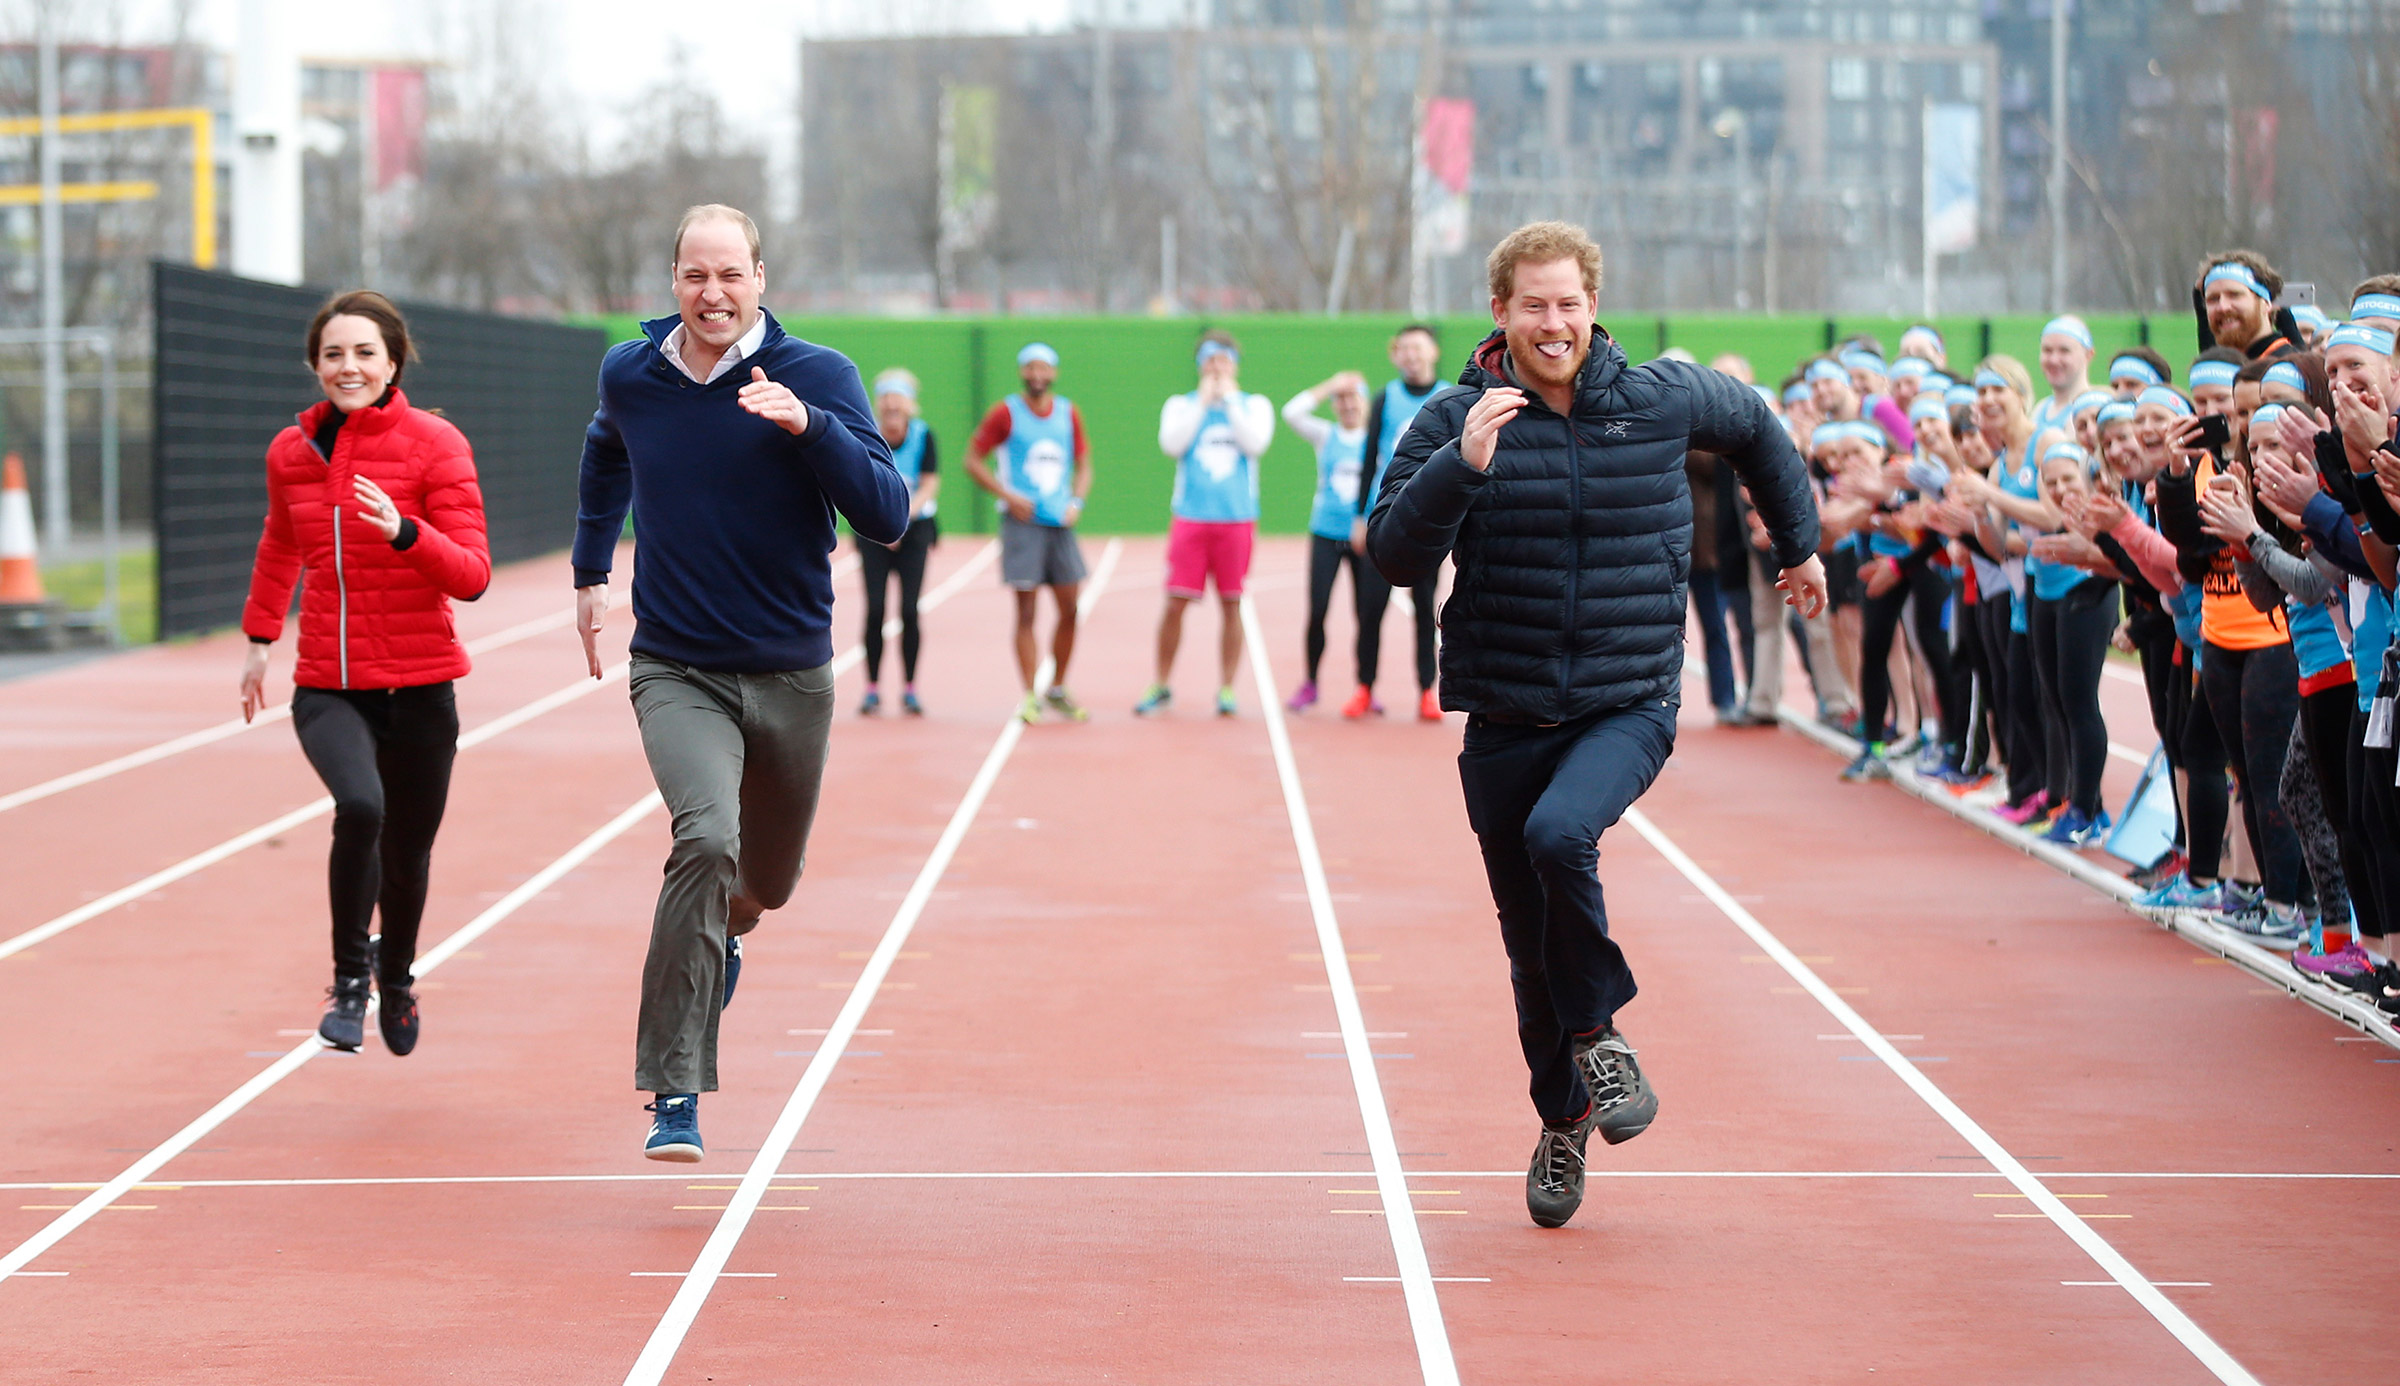 Февраль. Герцогиня Кембриджская Кейт, принц Уильям и принц Гарри (слева направо) на тренировке перед Лондонским марафоном
